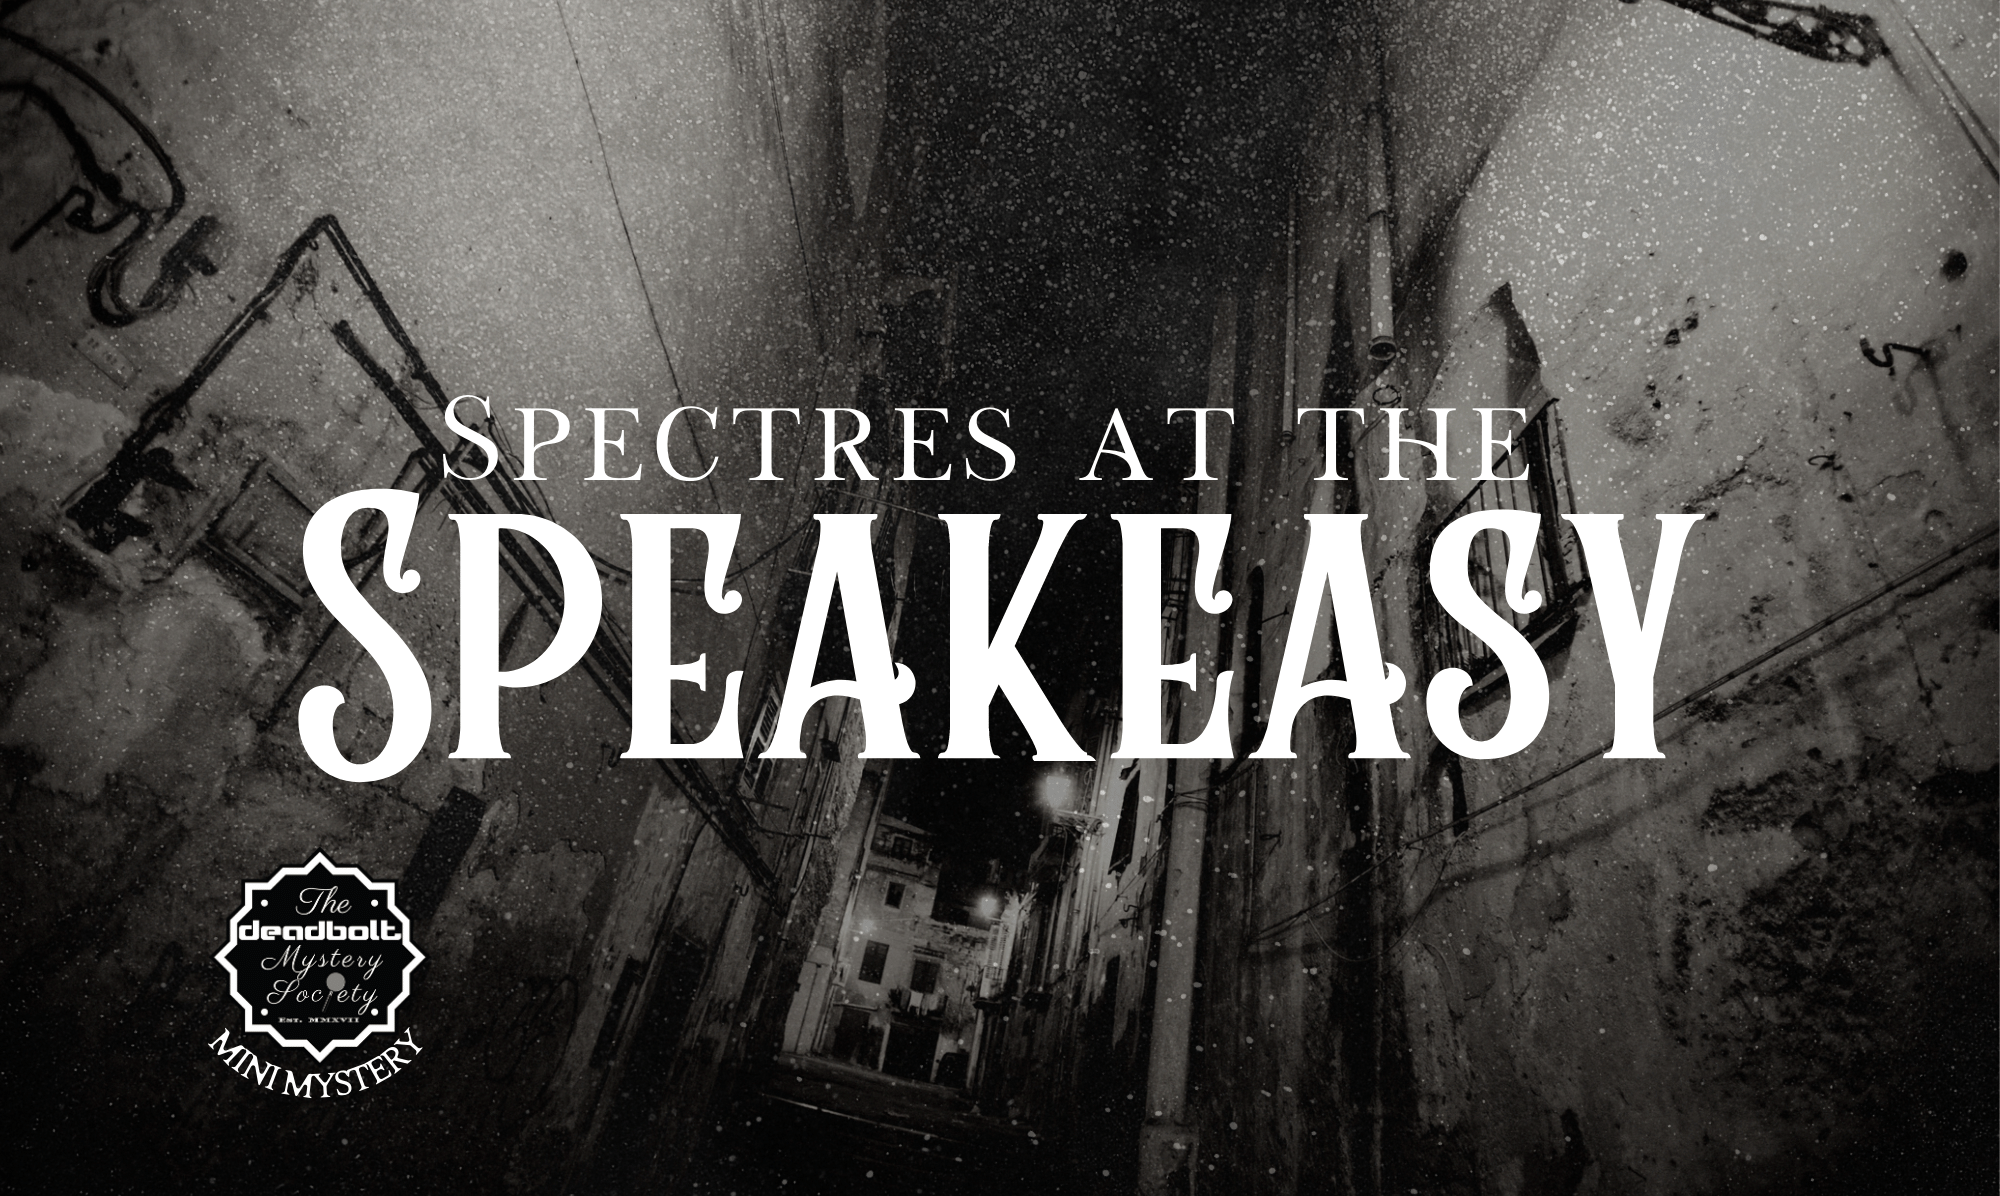 Spectres at the Speakeasy